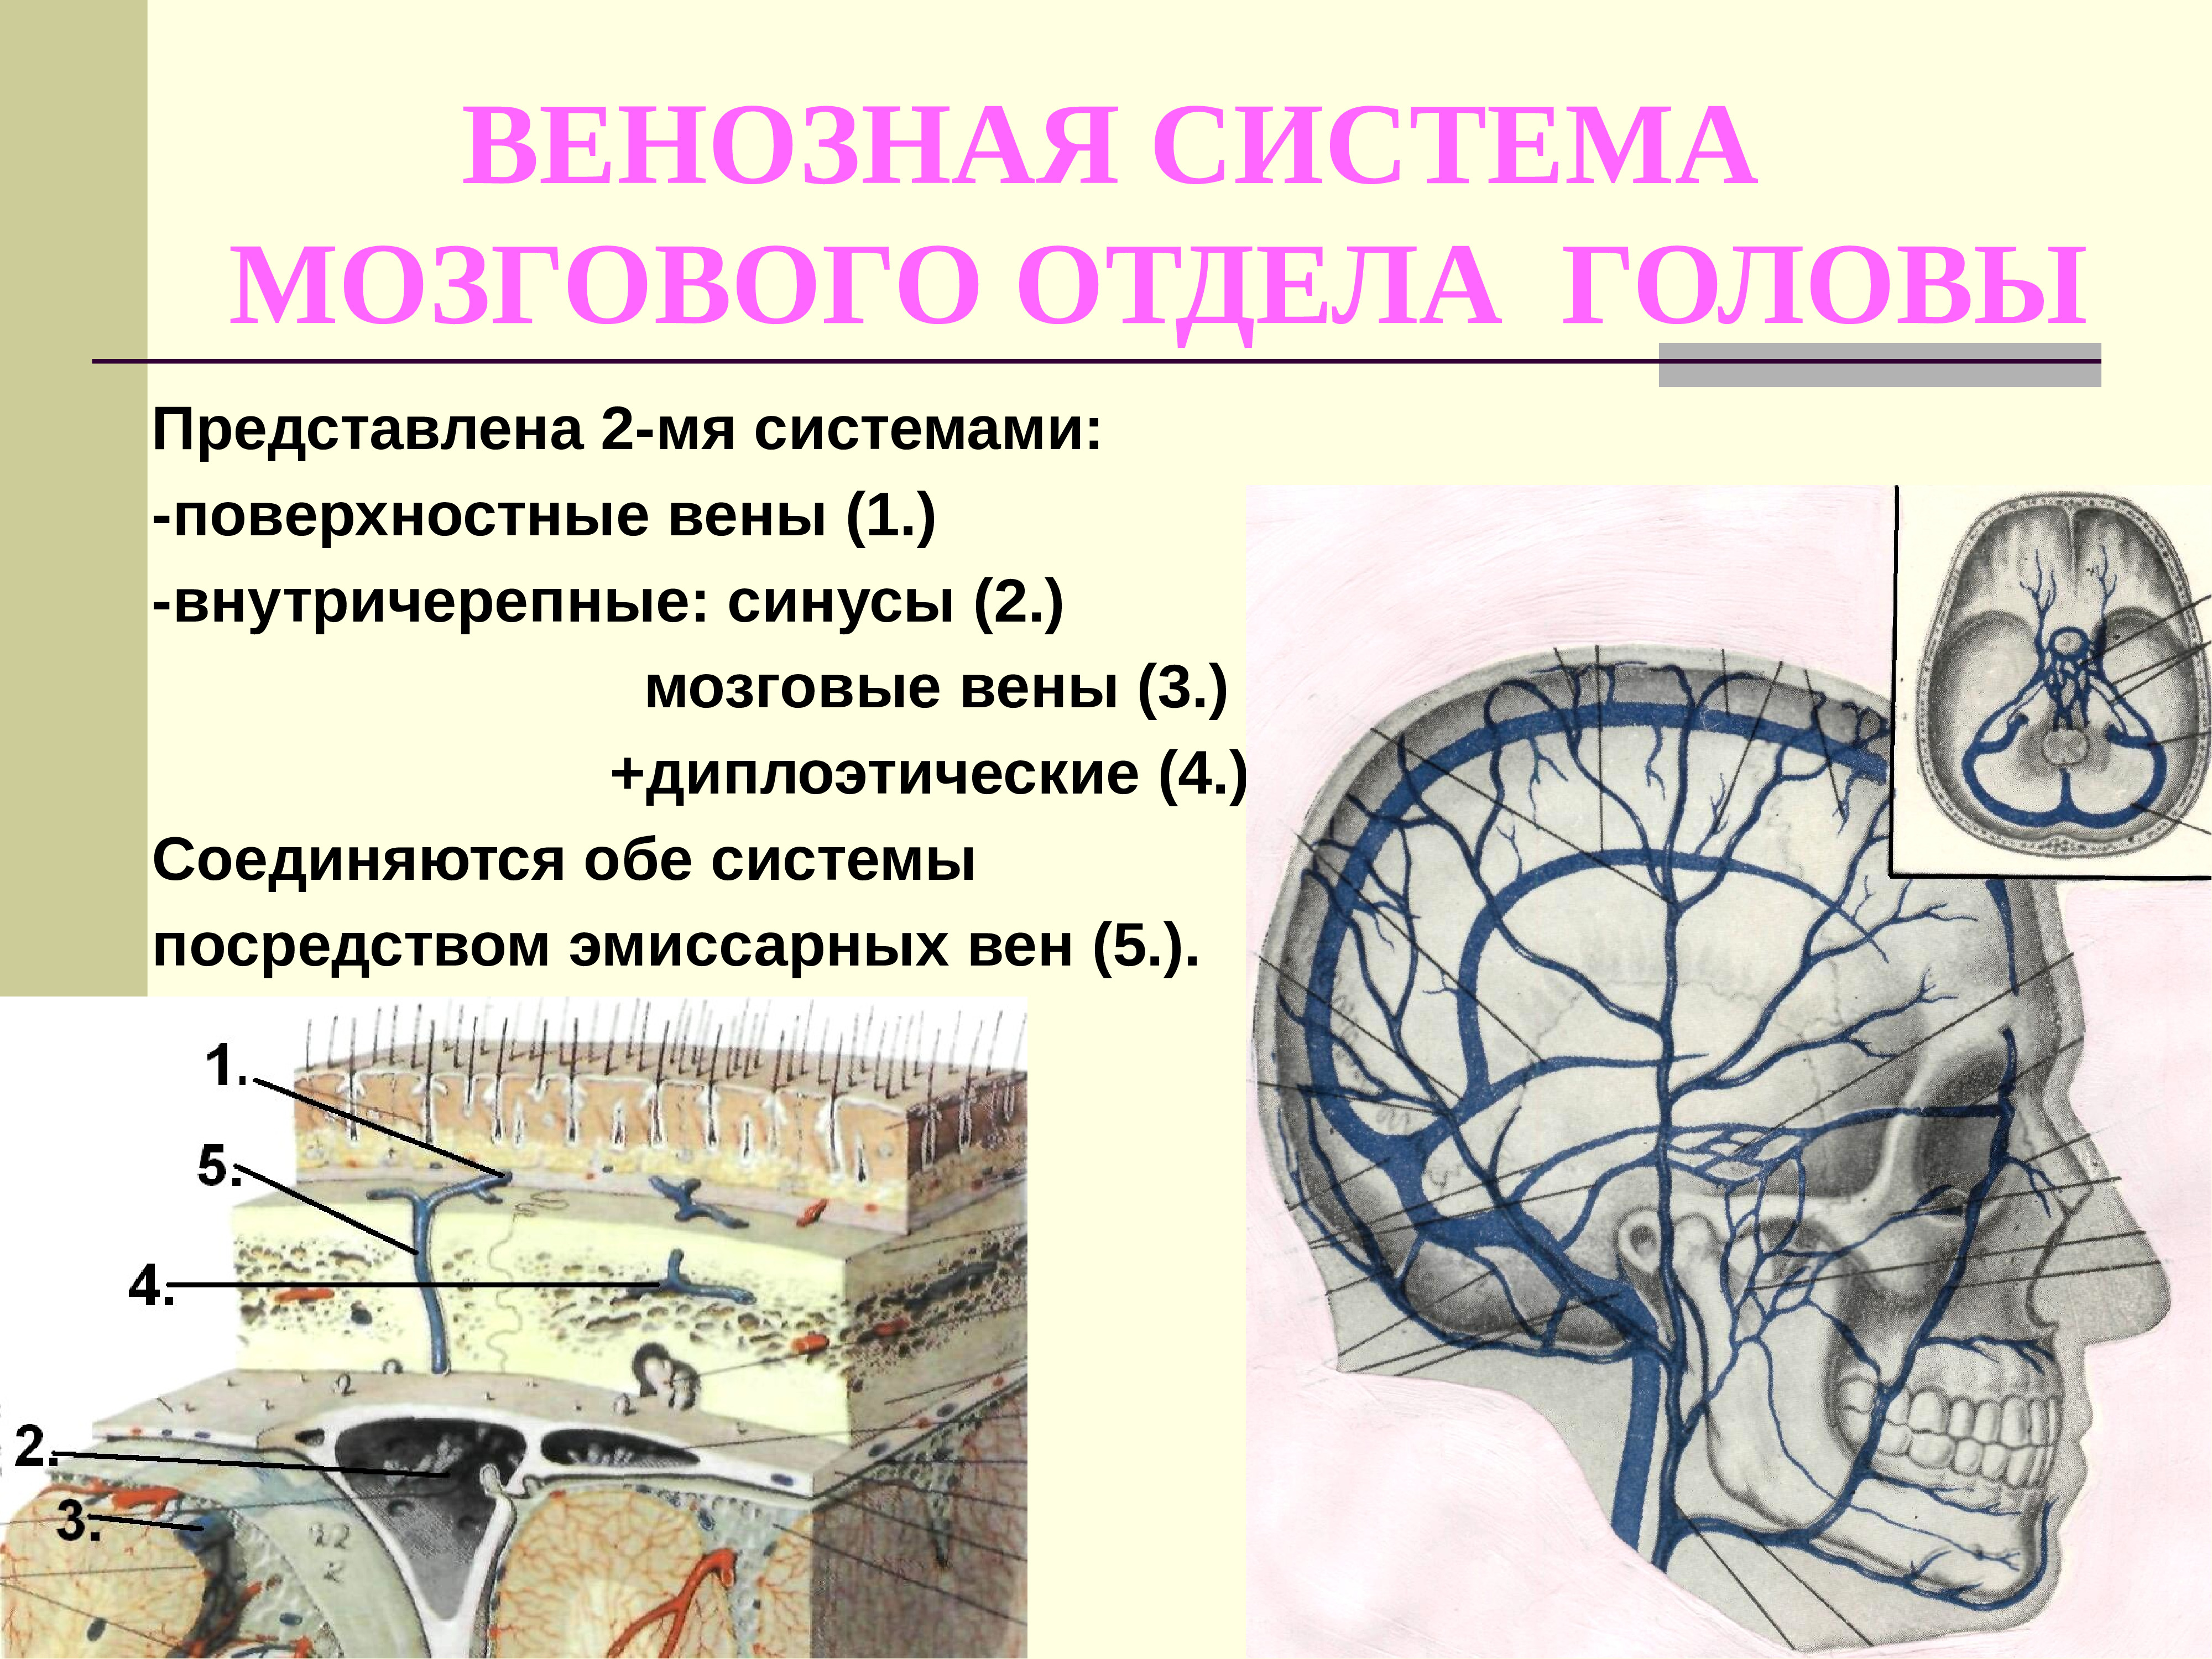 Отдел затылок. Диплоические и эмиссарные вены головы. Венозная система мозгового отдела головы. Вены головного мозга эмиссарные анатомия. Иннервация мозгового отдела головы.